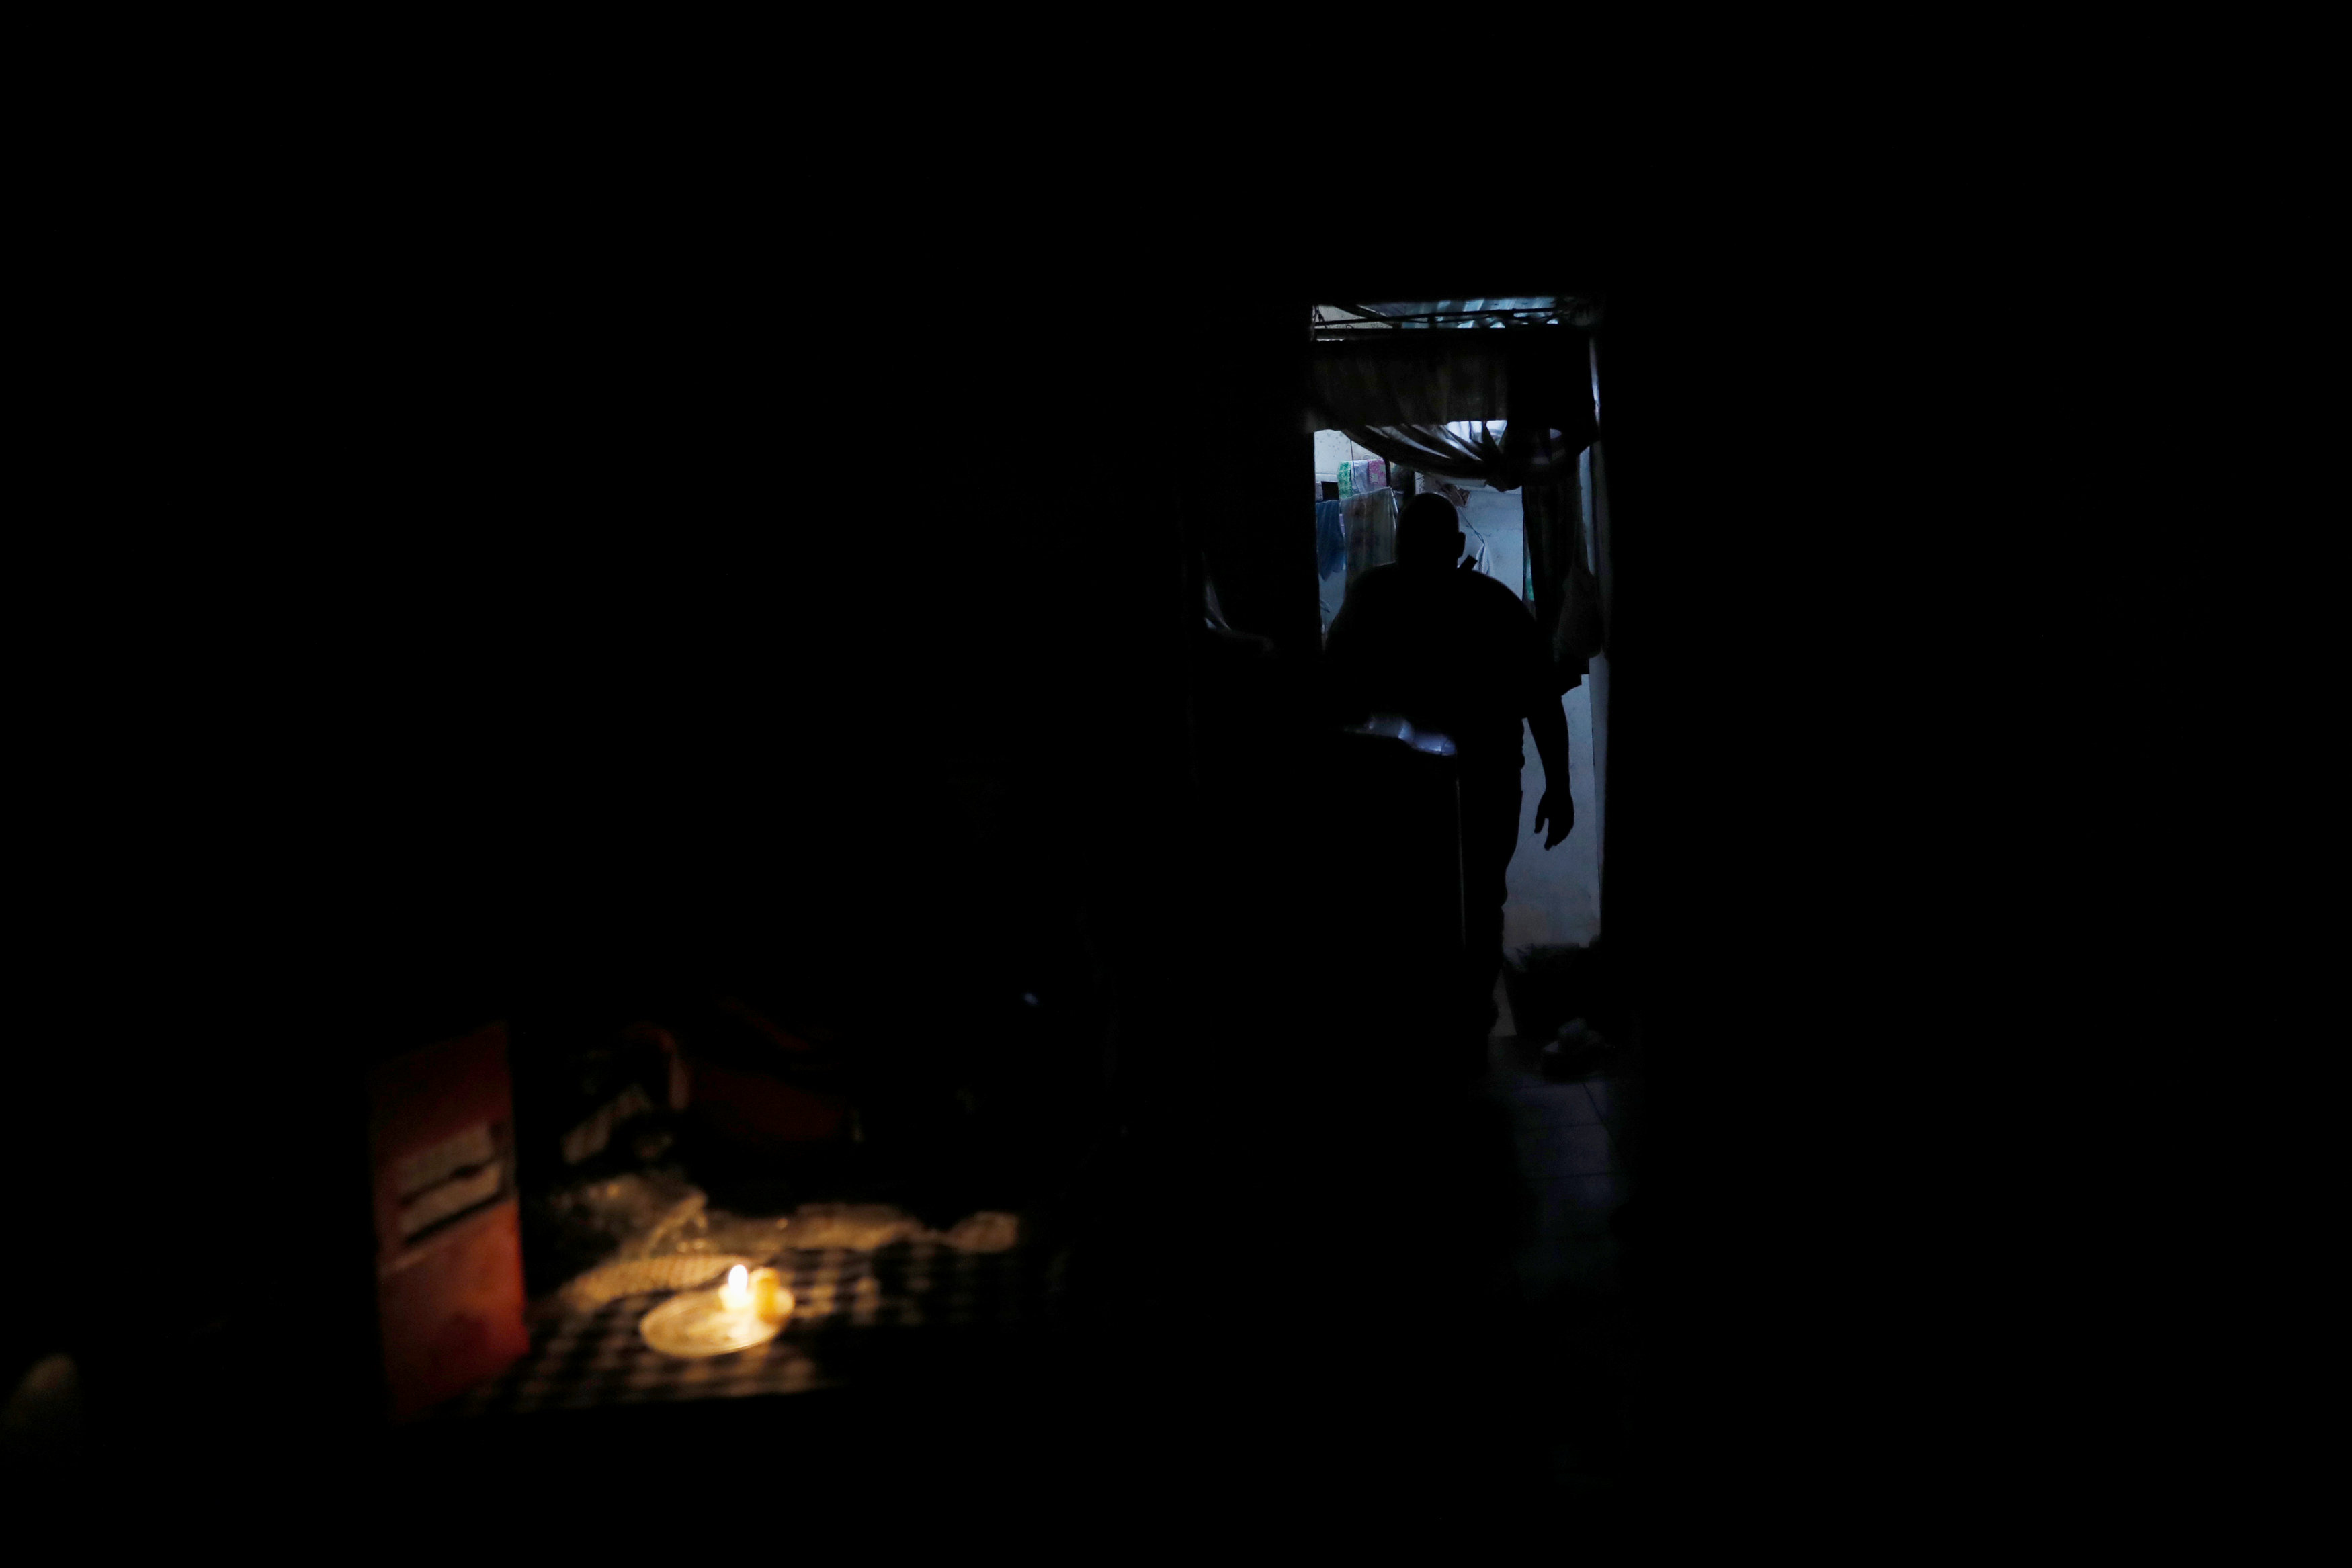 Погасив свет комната погрузилась во мрак впр. Остались без света. Украина без света. Земиалькус без света. Вся Молдова без света.